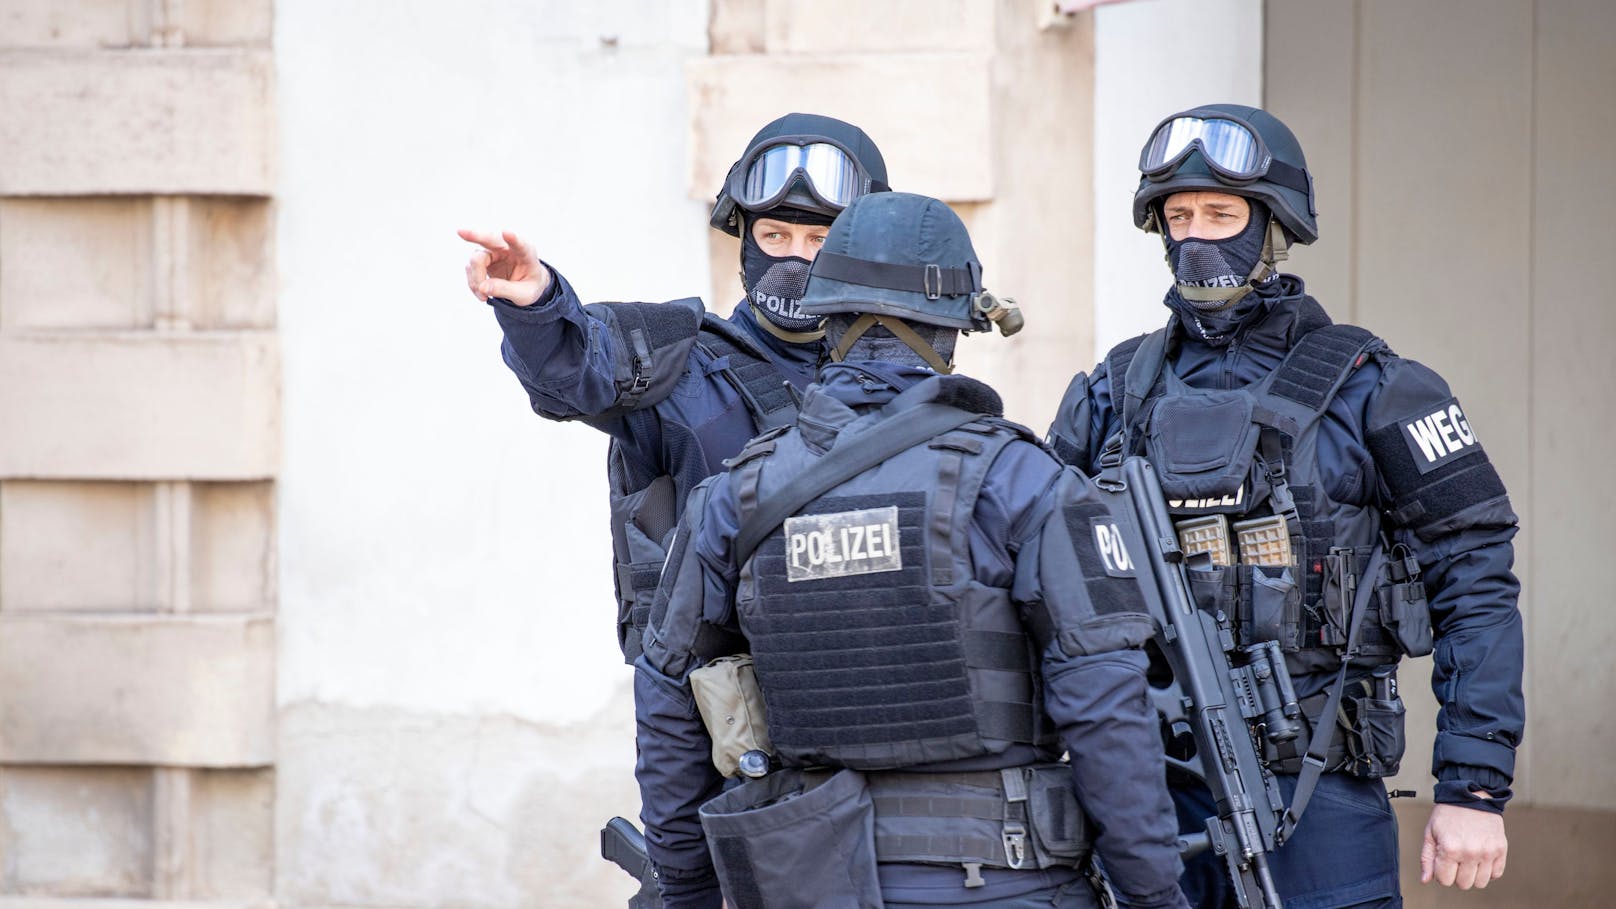 "Hohes Terrorrisiko" – hier rüstet Polizei jetzt auf